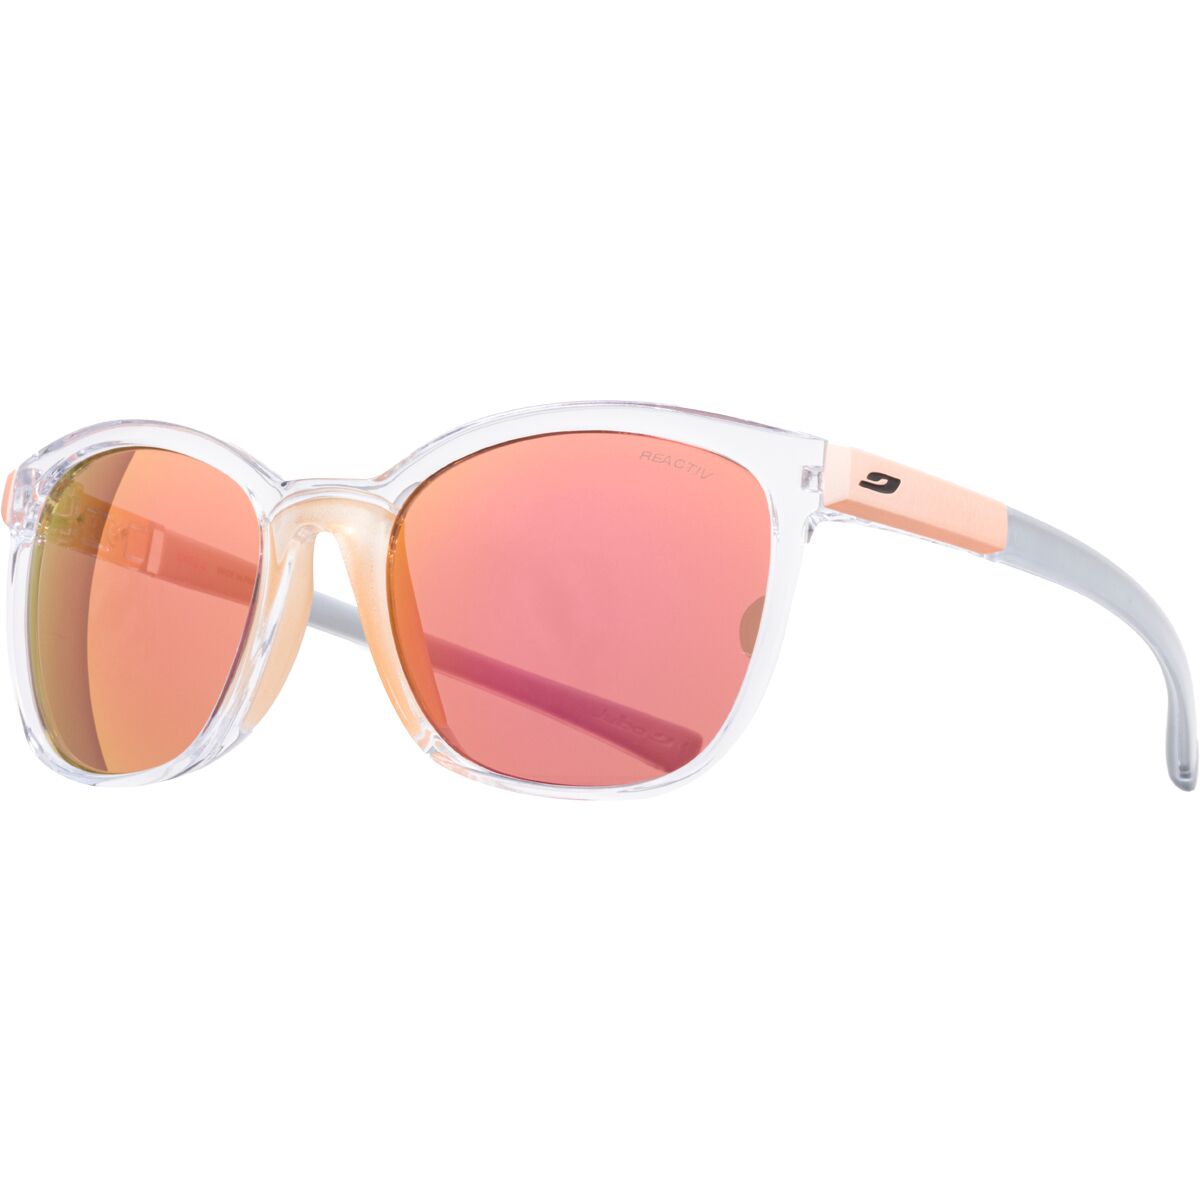 Julbo Spark Sunglasses - Women's